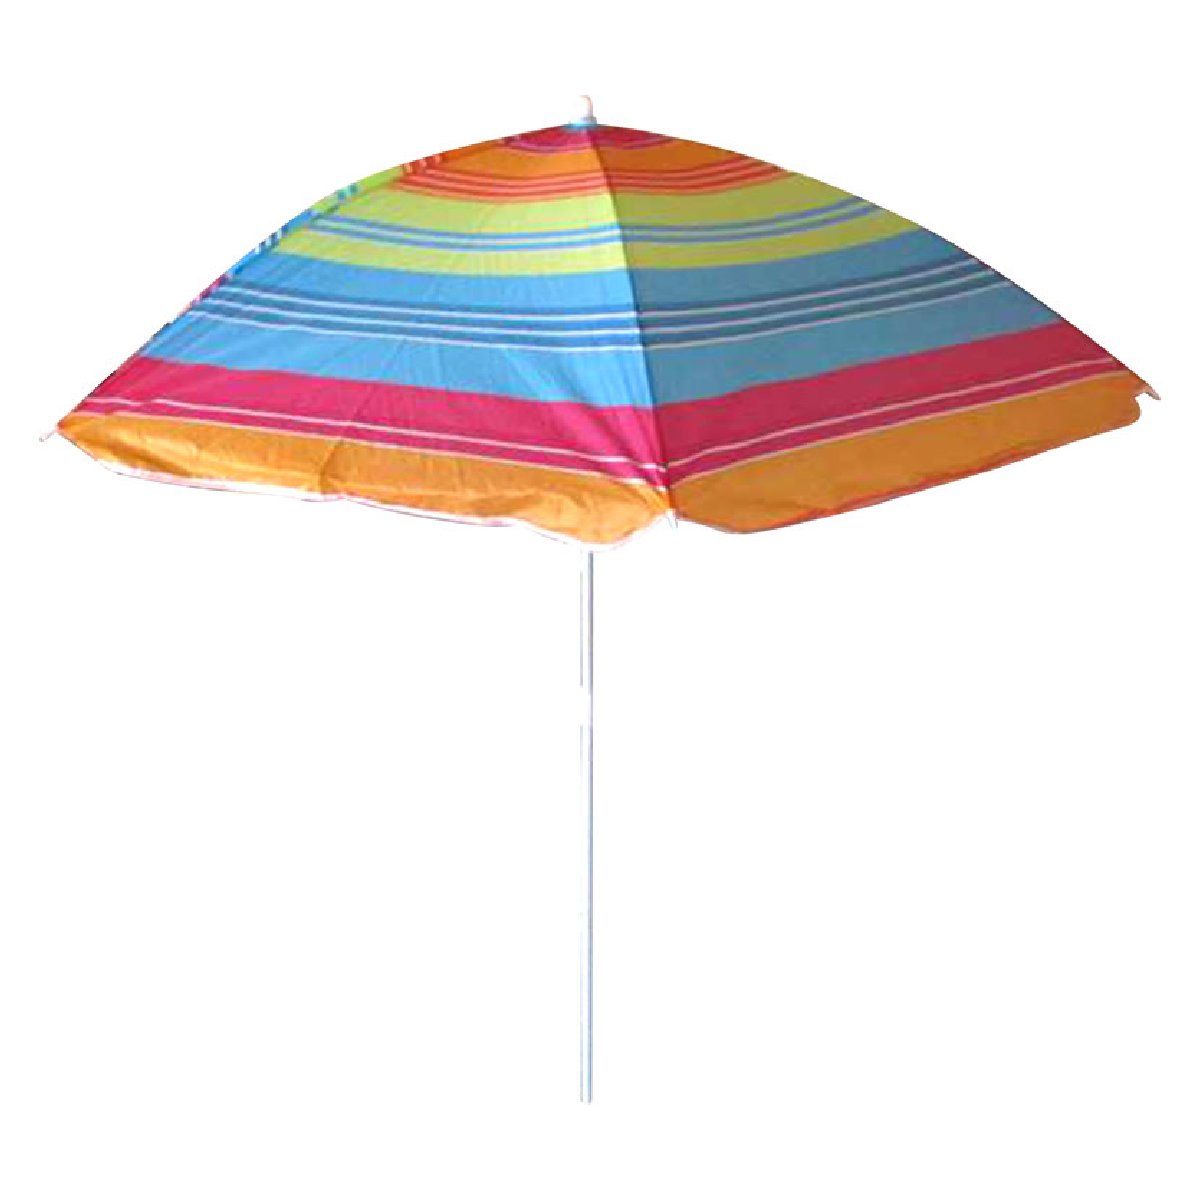 Зонт пляжный Ecos BU-01 140x6 см, складная штанга 145 смКупить